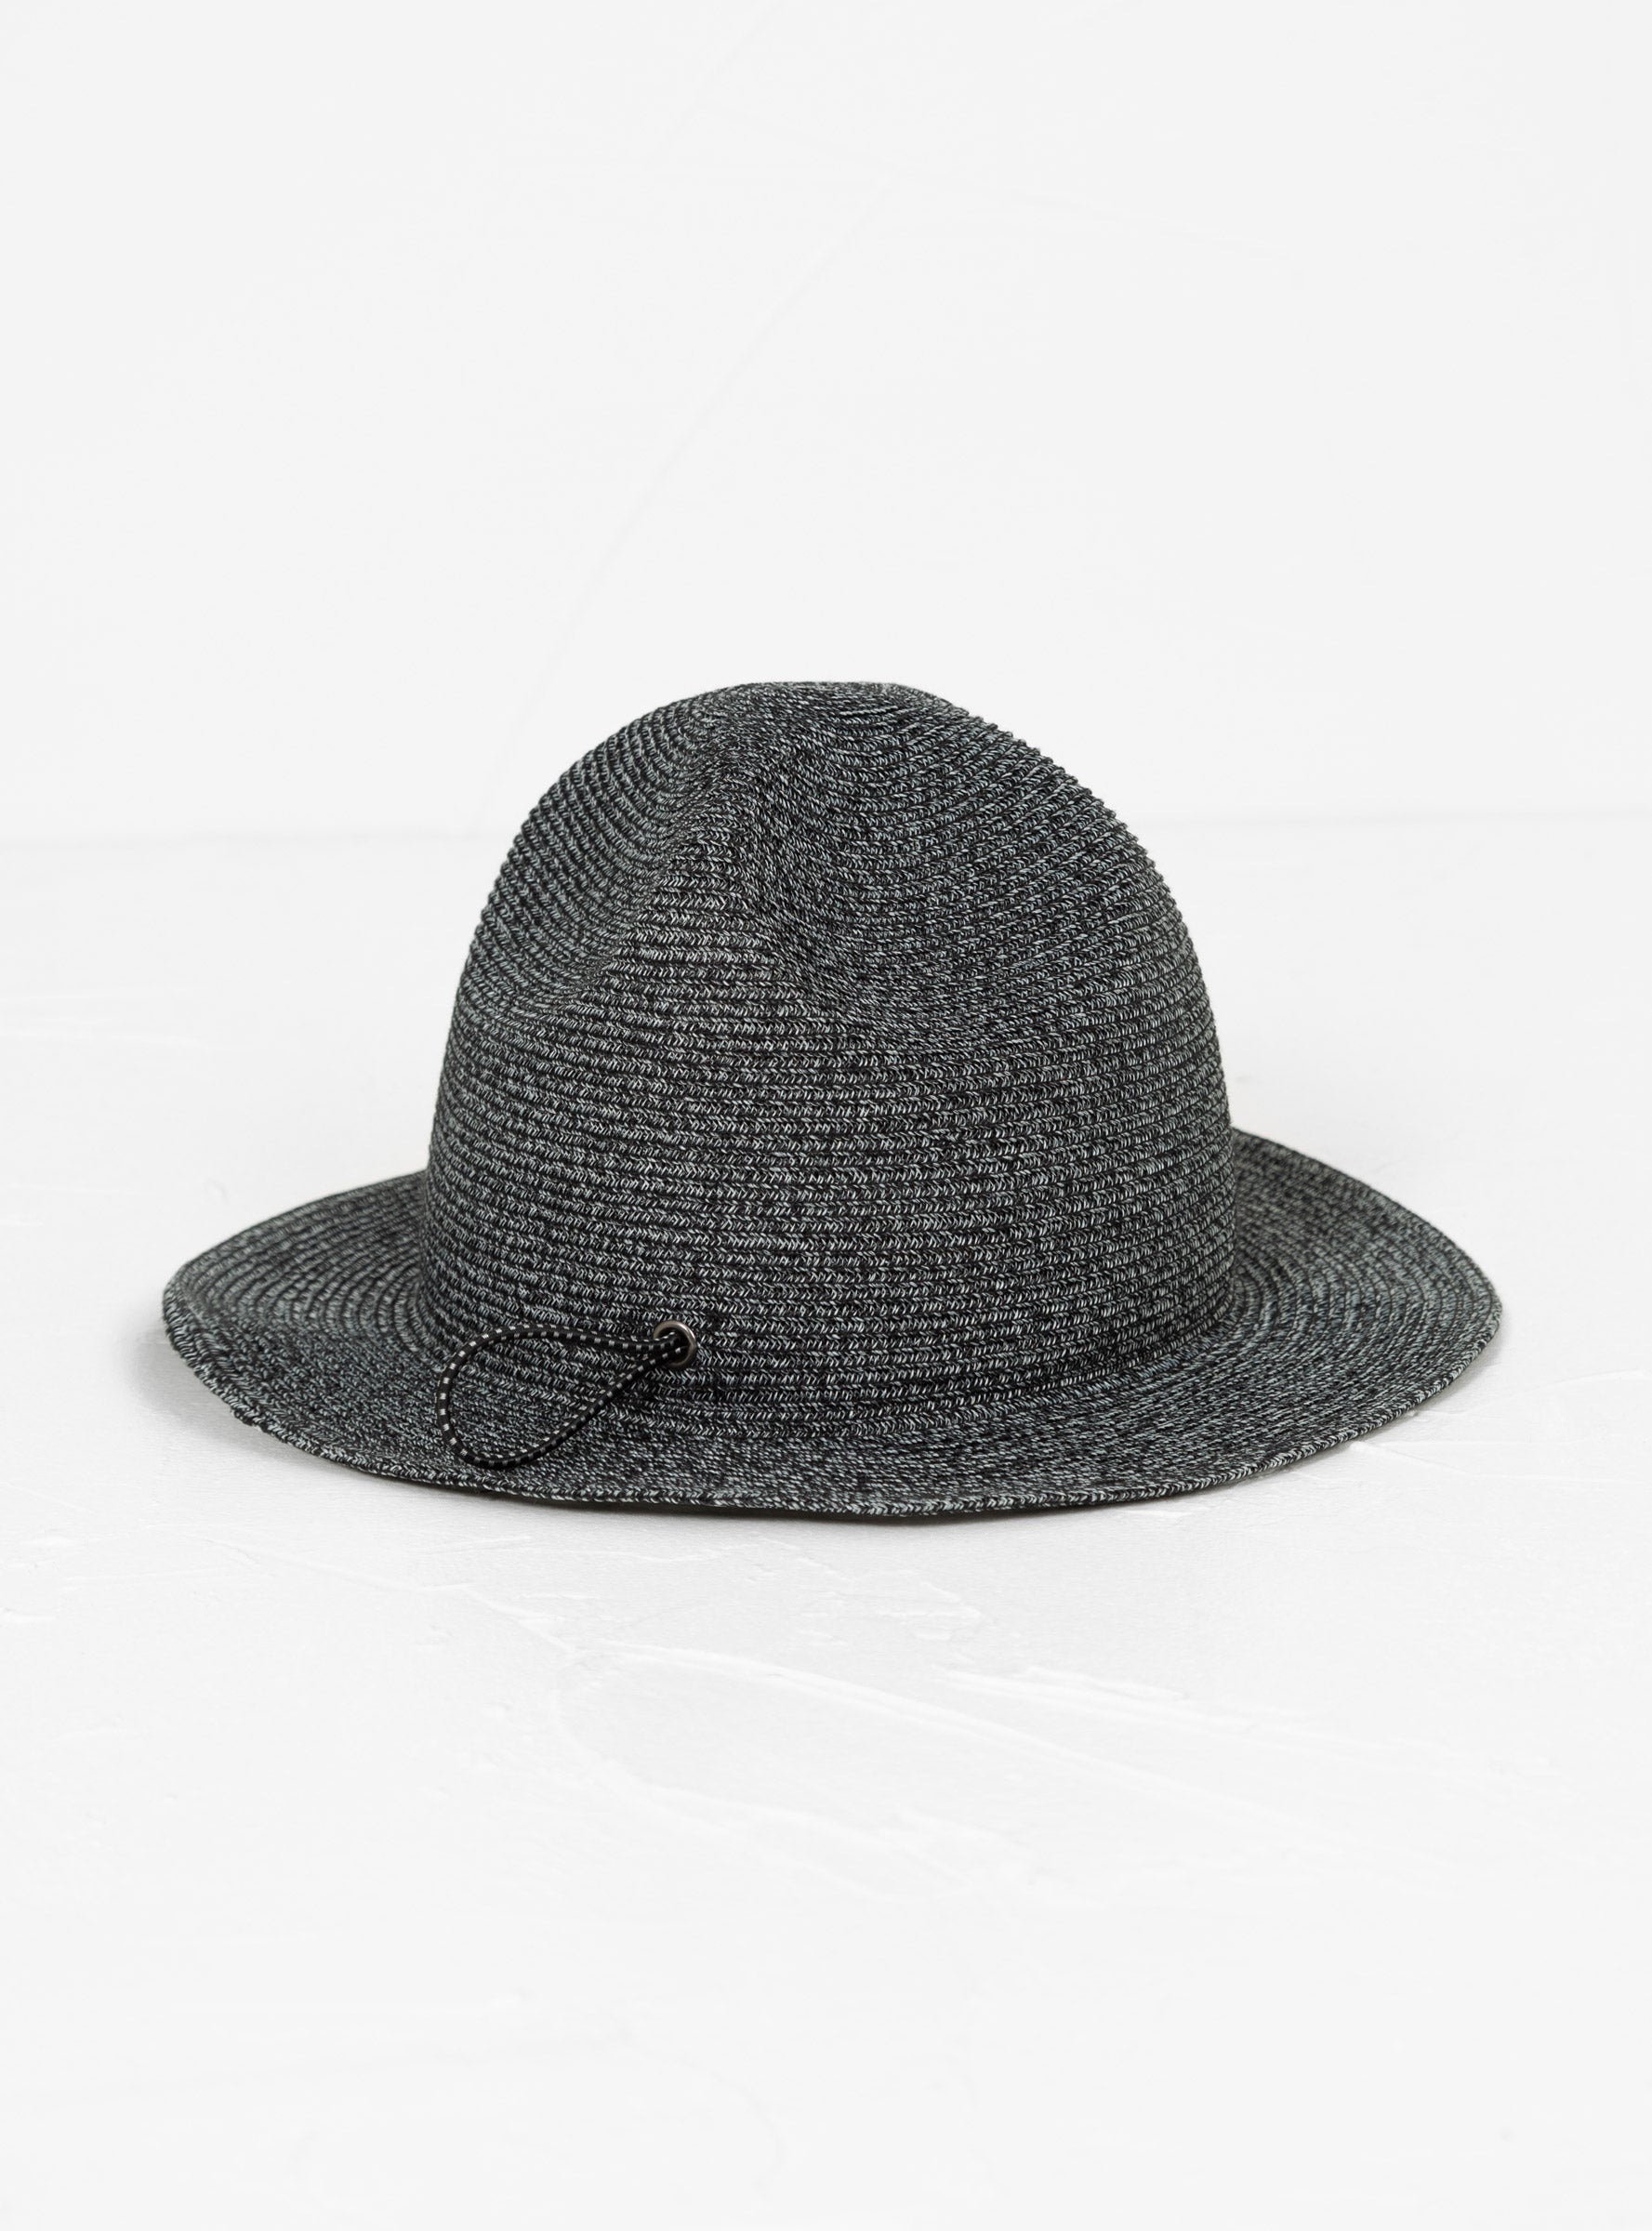  Sublime Packable Travel Mountain Hat Black